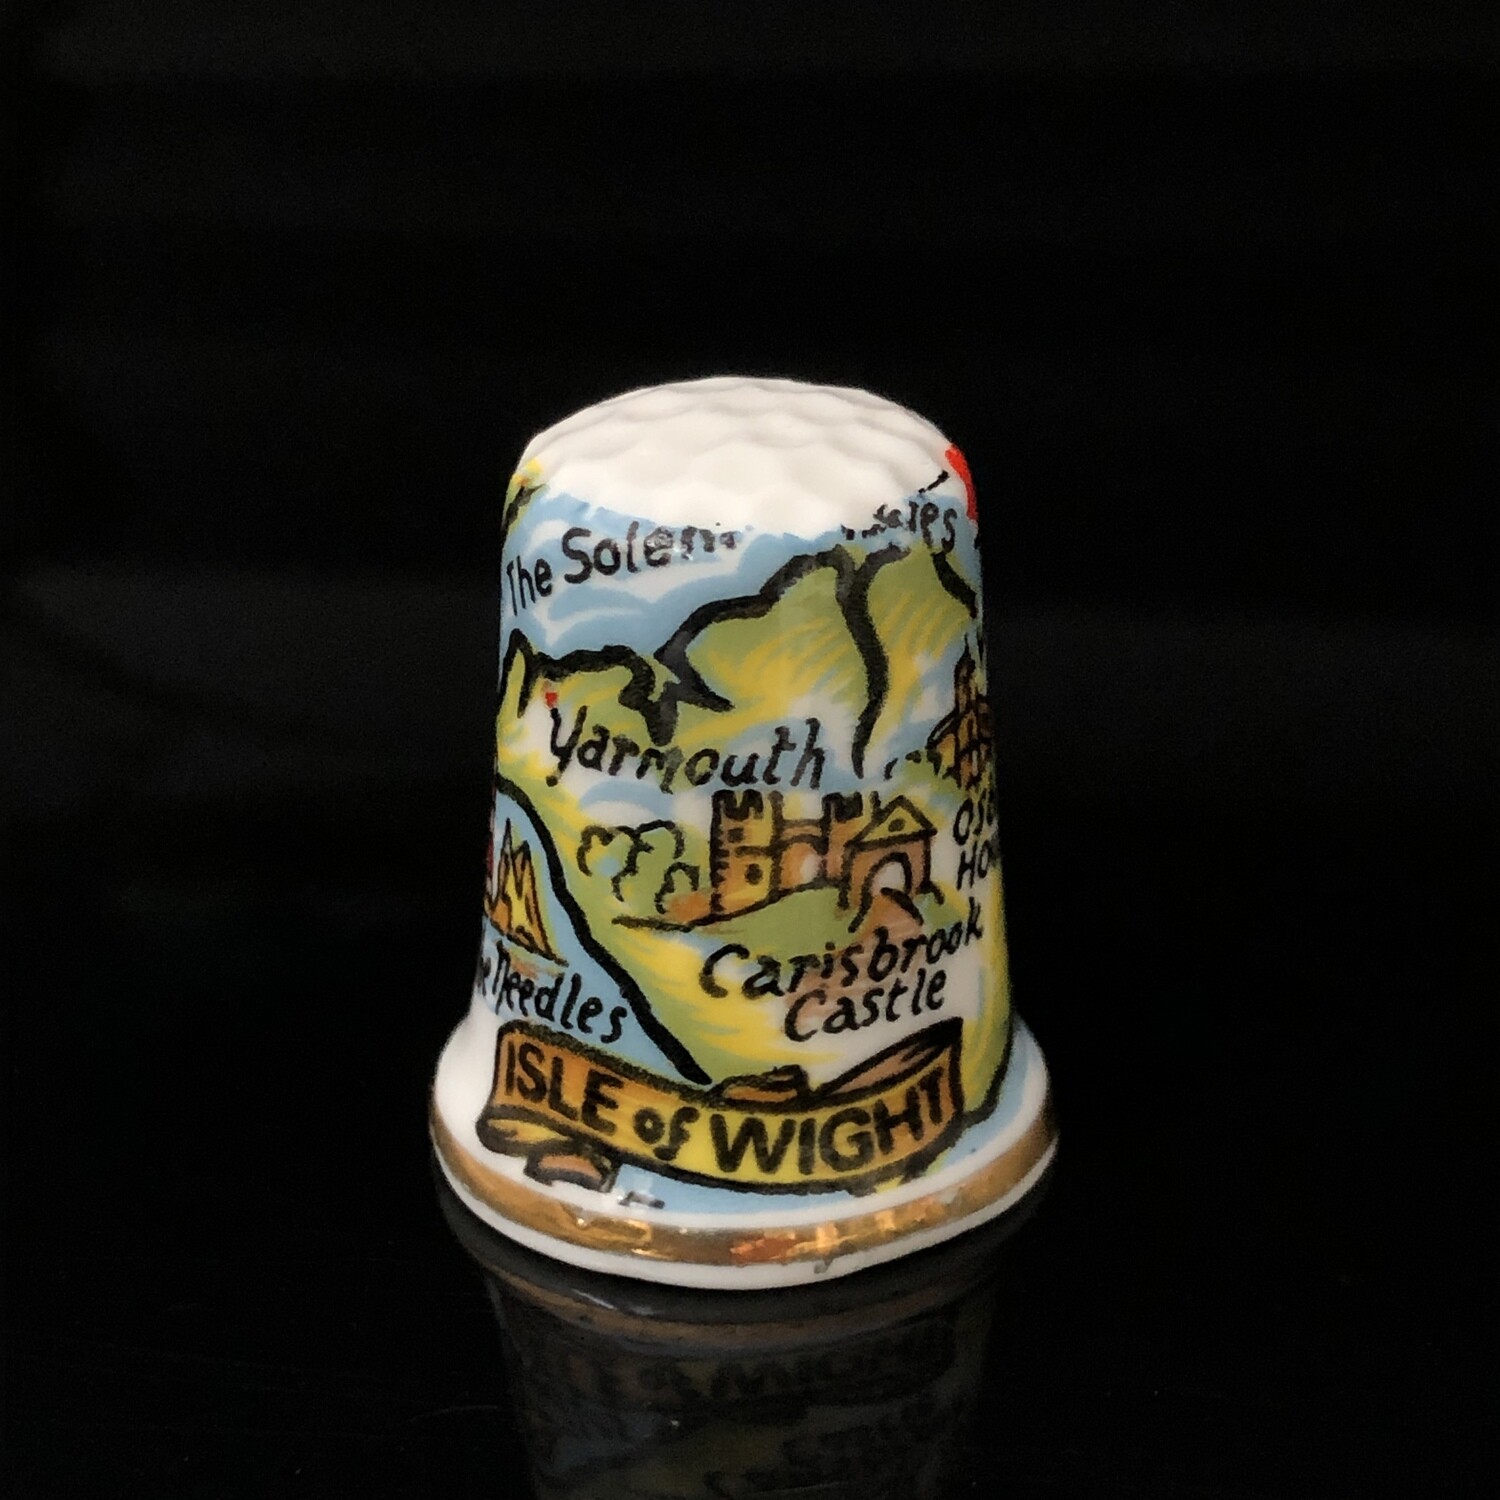 Коллекционный наперсток ISLE of WIGHT, фарфор, Англия, 1970-1980-е гг.